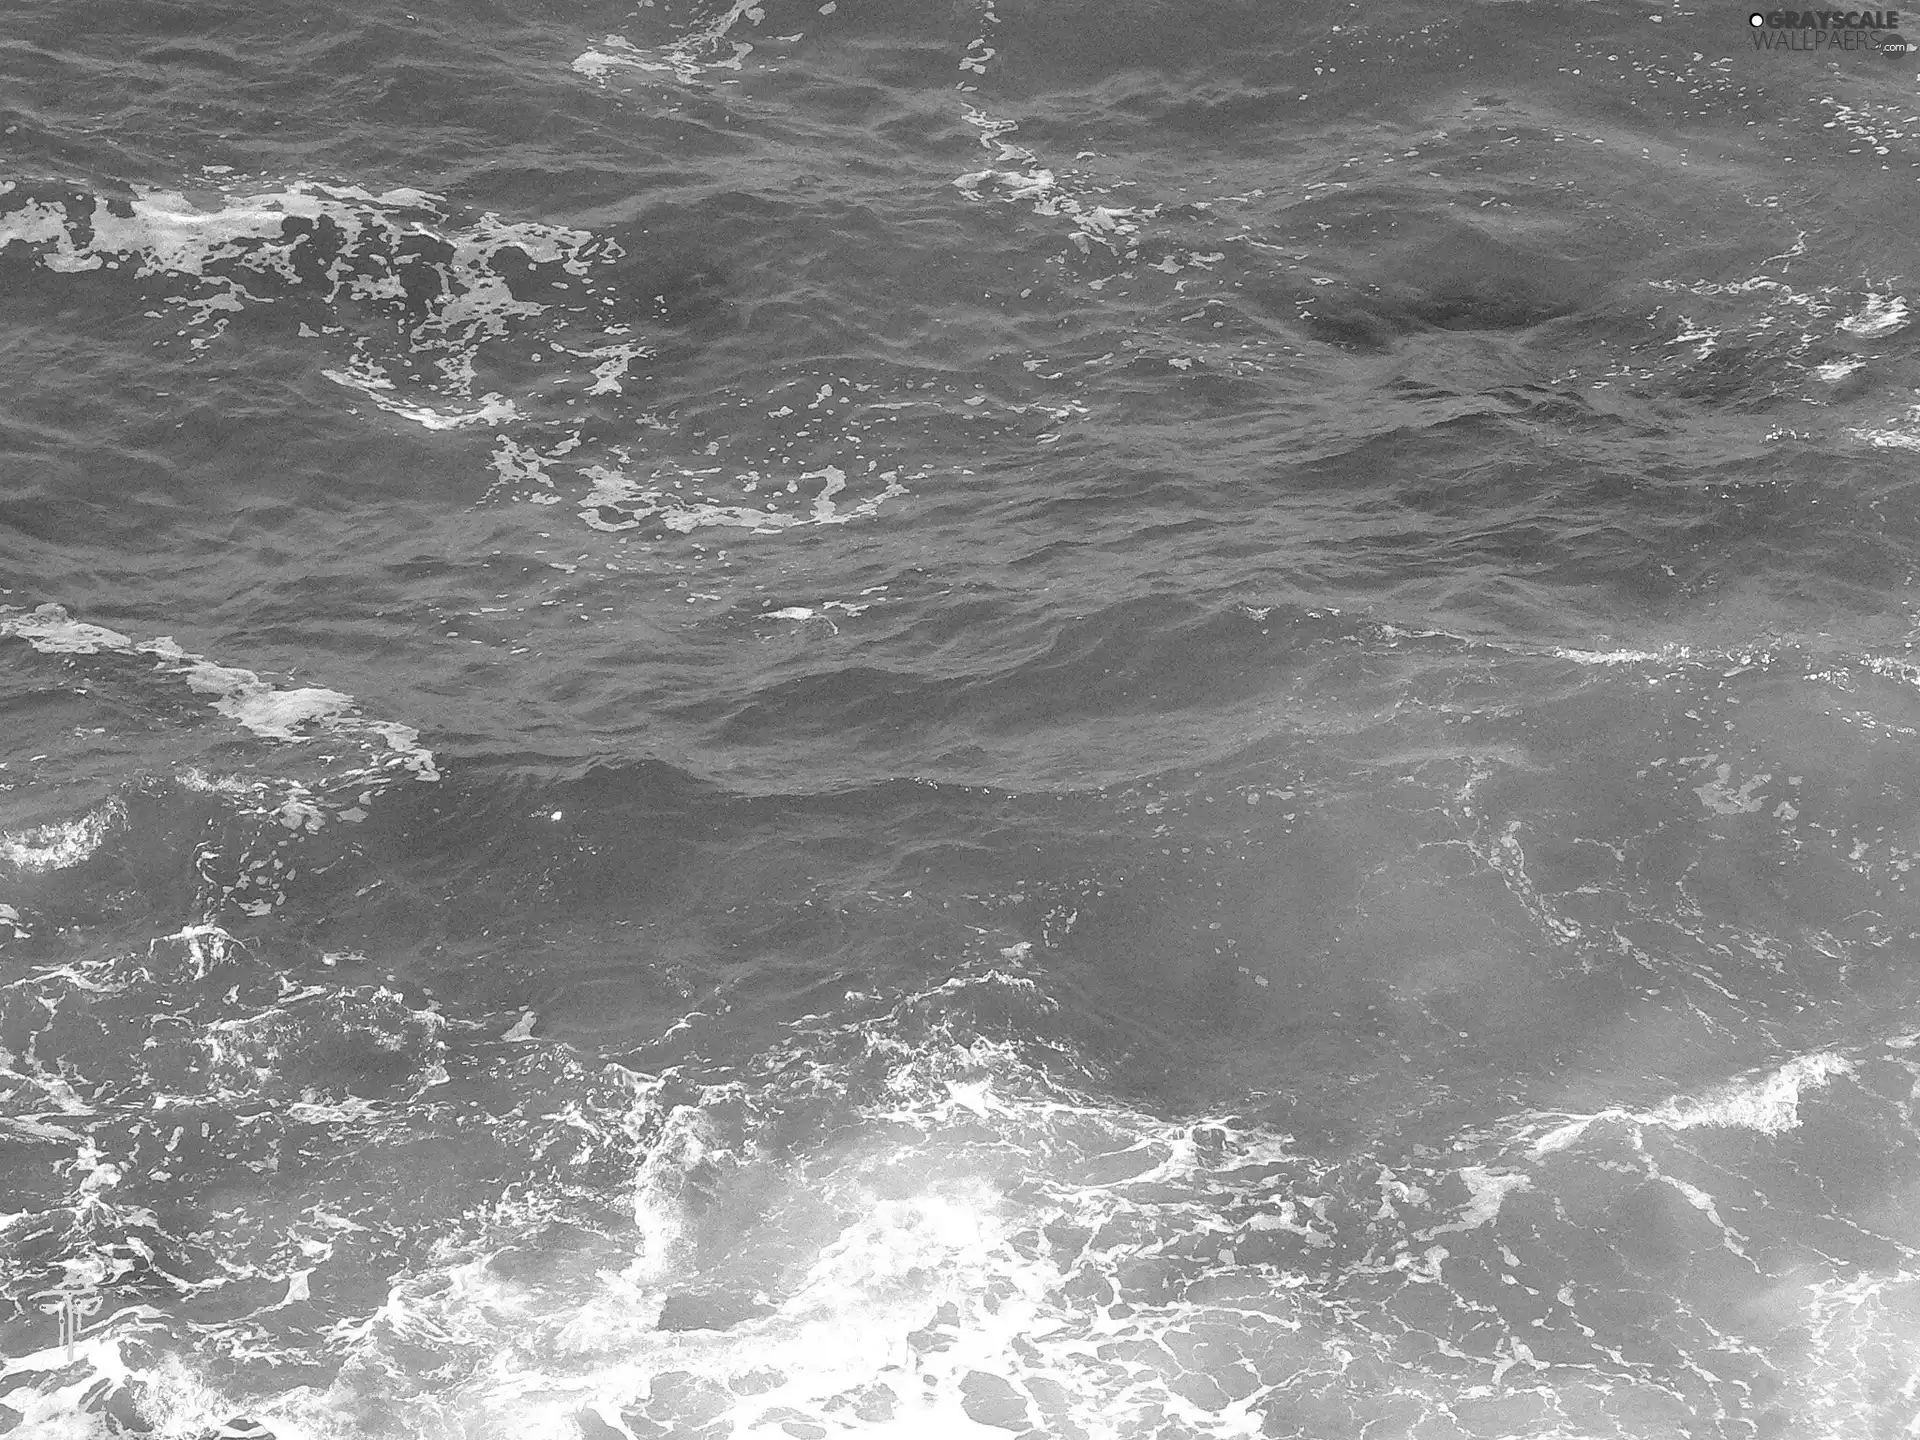 sea, Waves